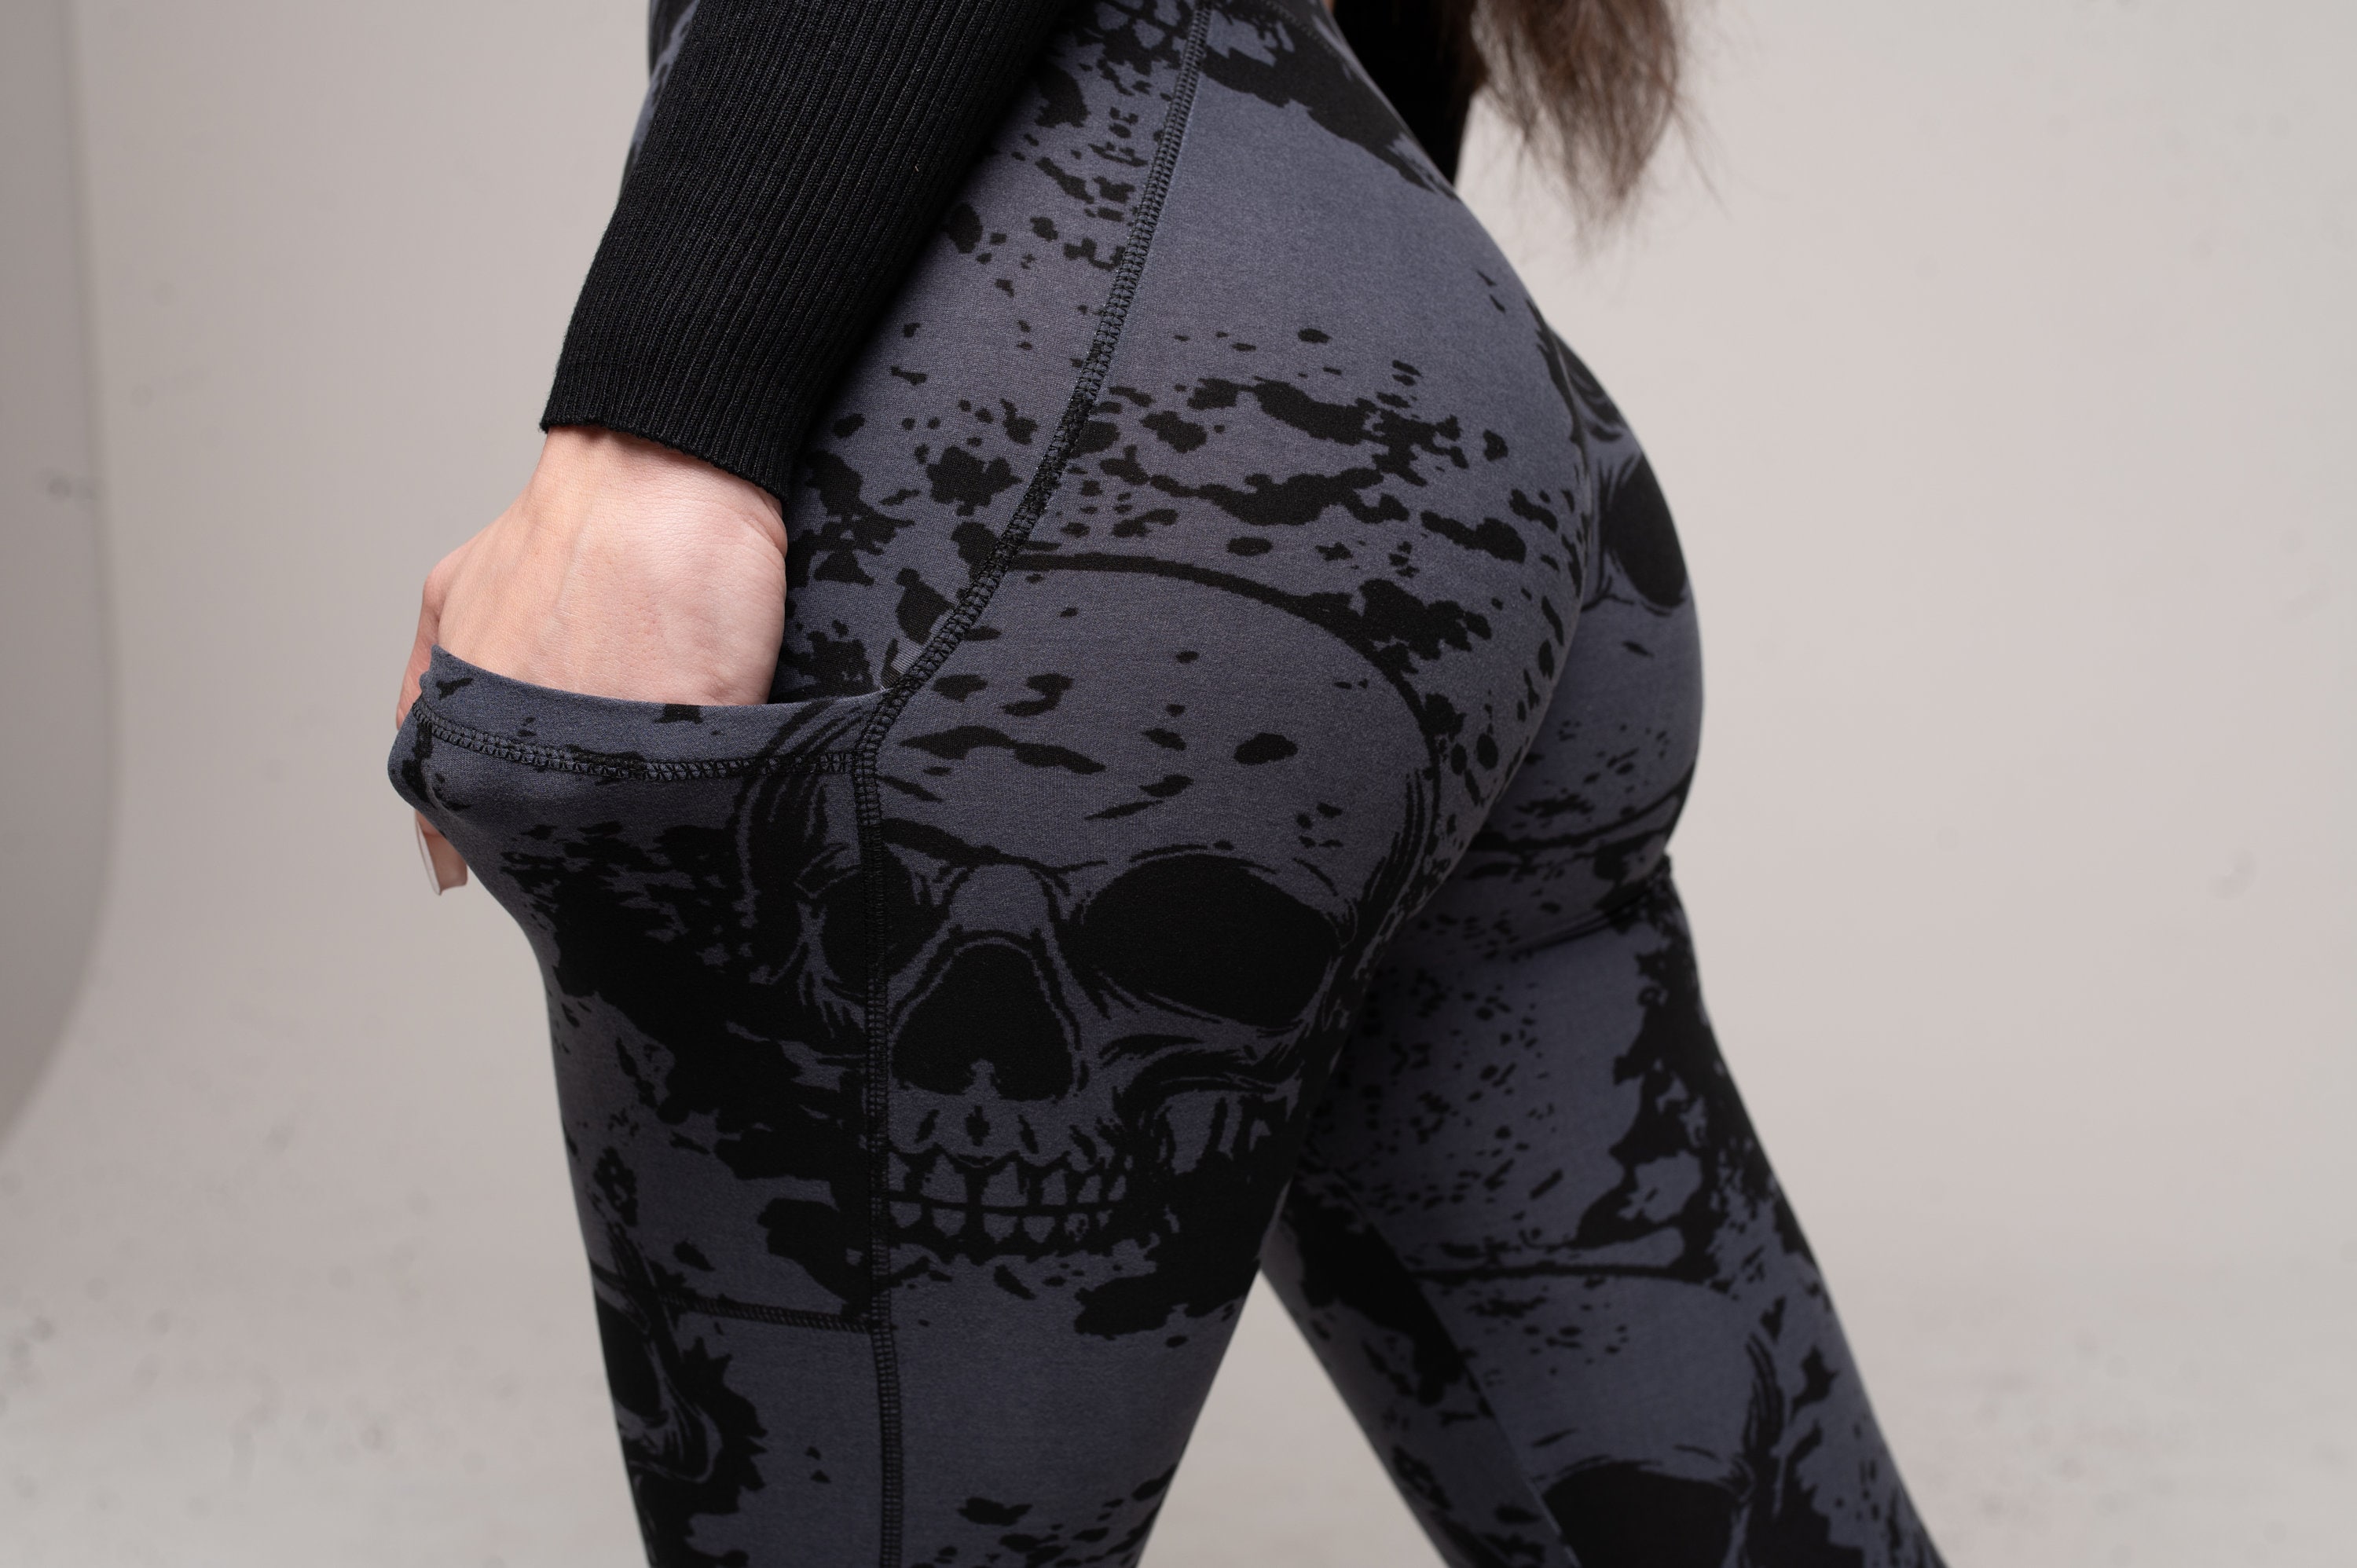 Black Skulls Leggings with Pockets for Women, 5" High Waist, Yoga Pants